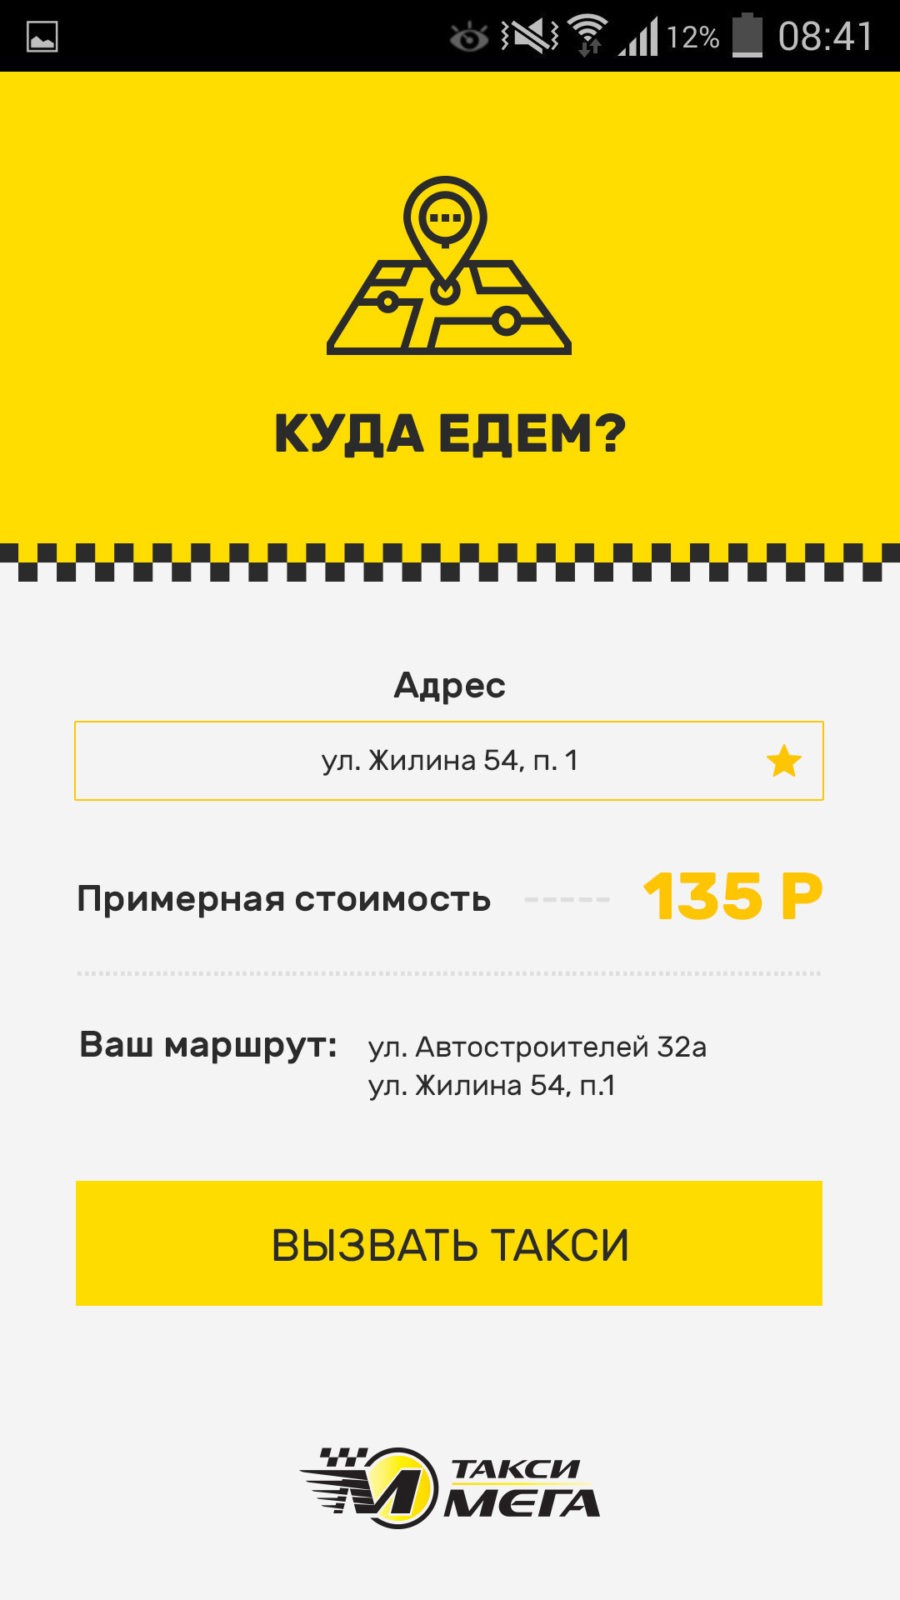 Такси мега - Мобильное приложение